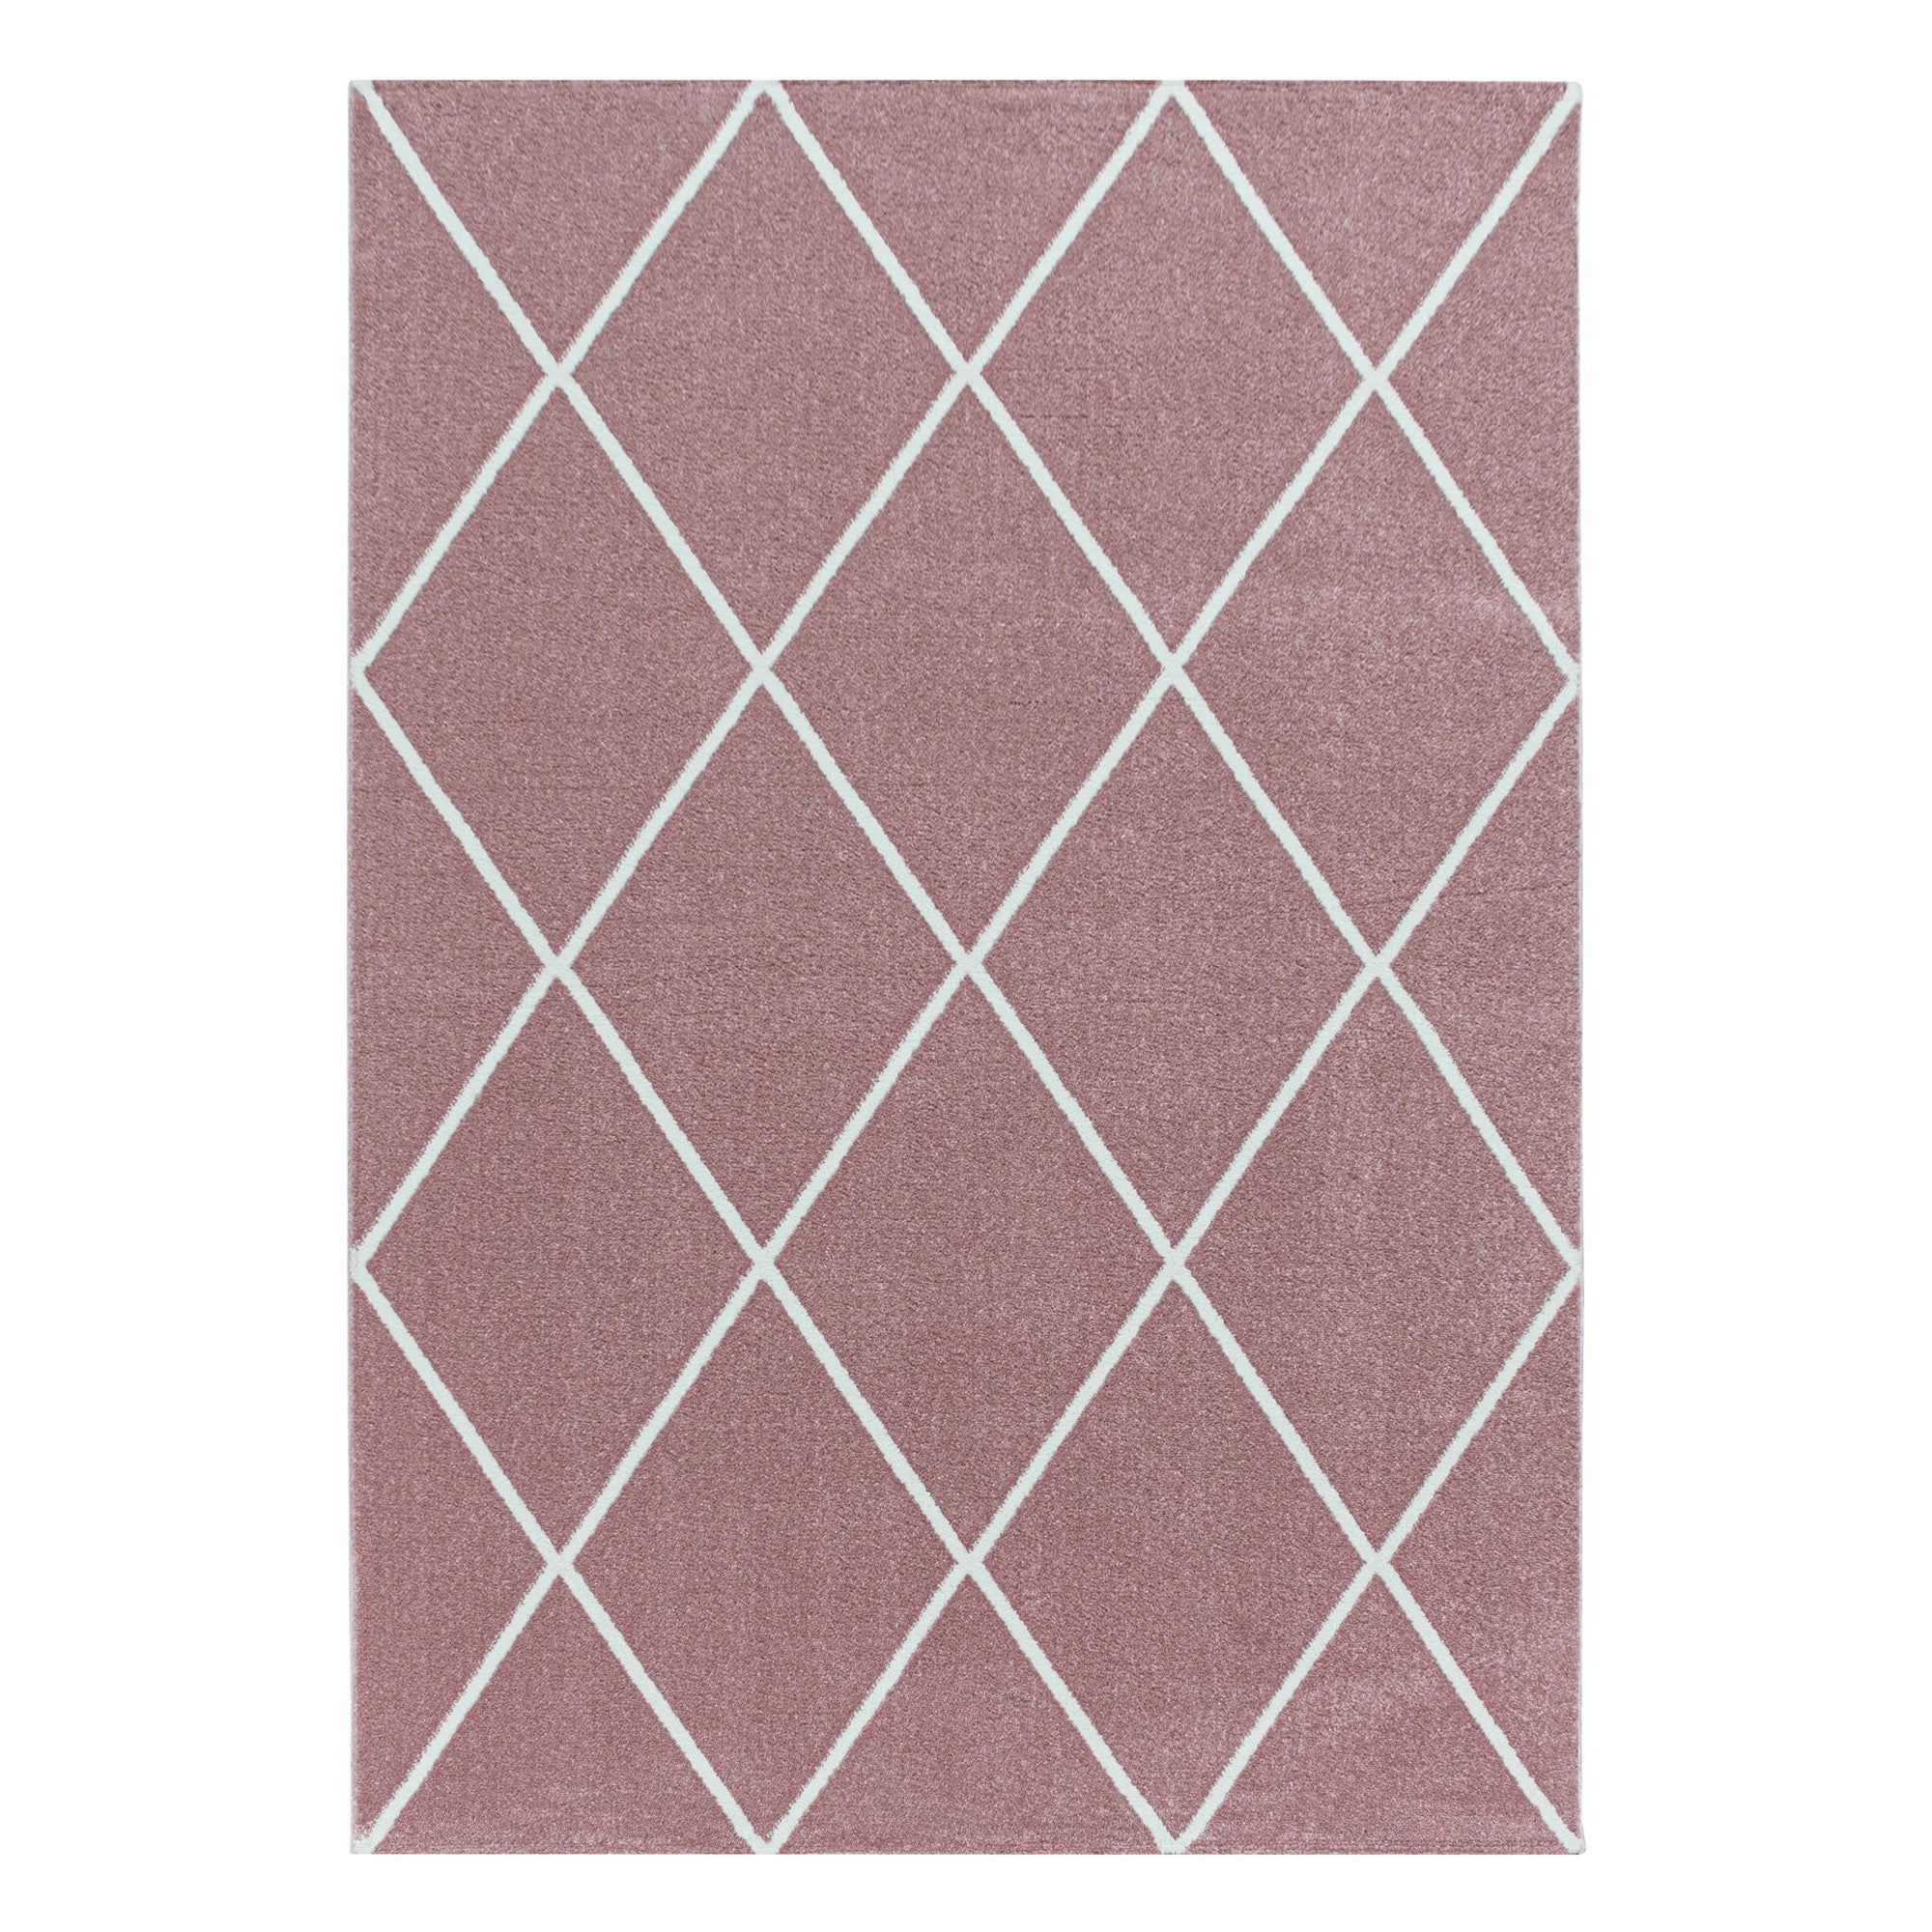 Kurzflor Teppich Rosa Design Raute Modern Linien Wohnzimmerteppich Unifarben